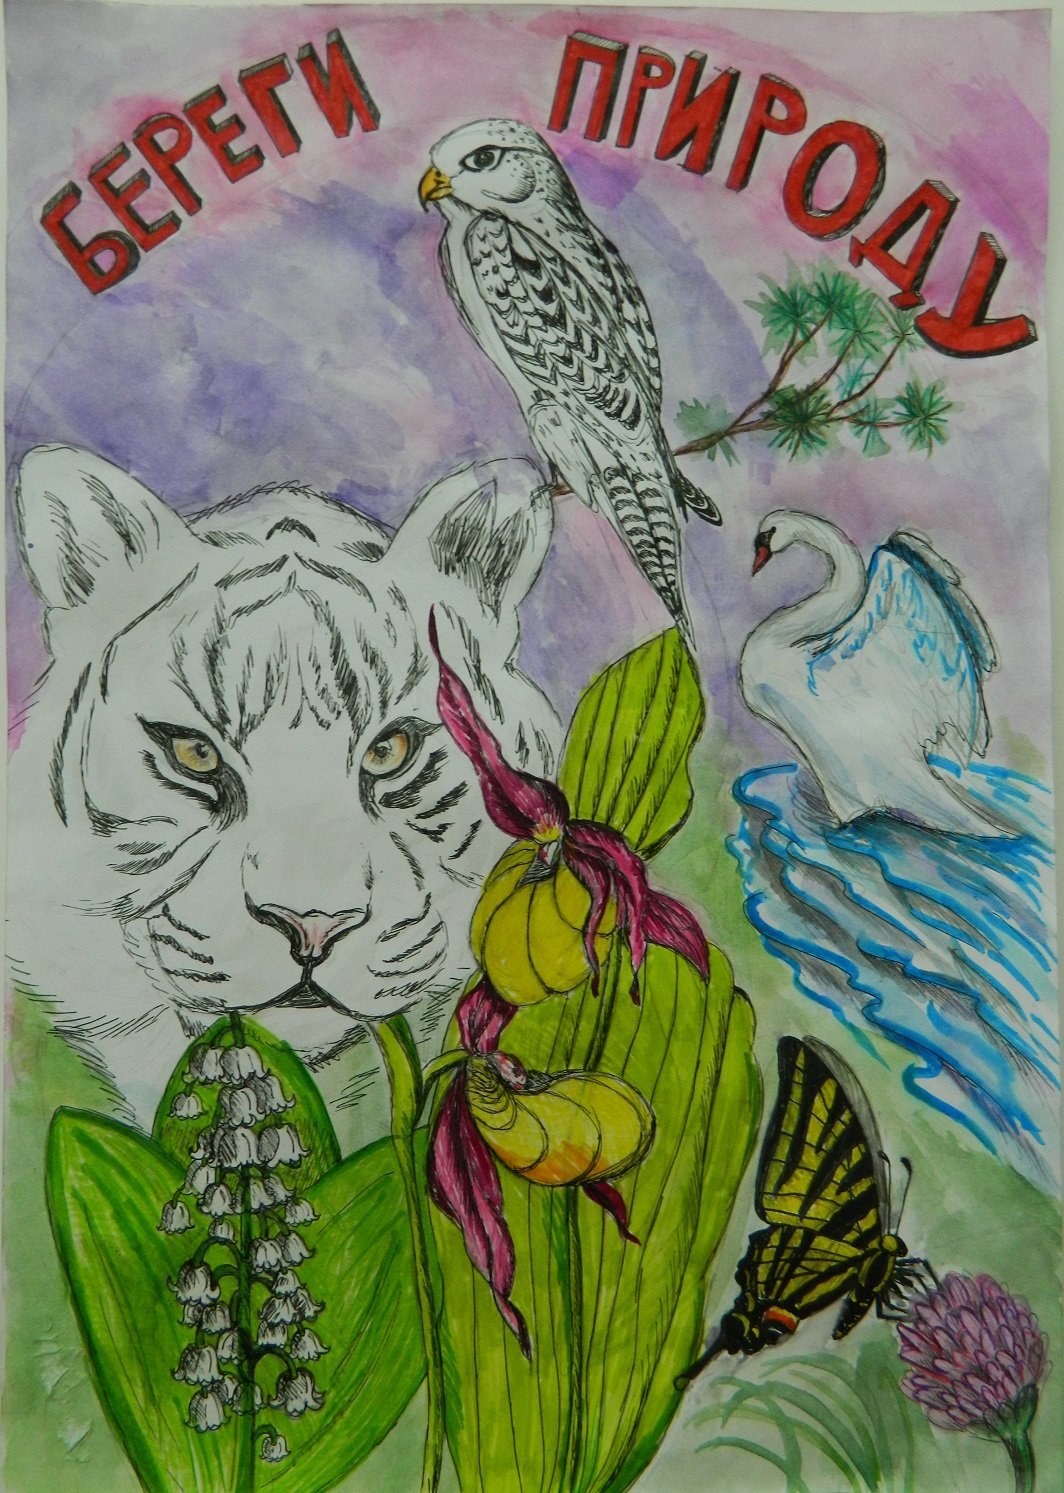 Рисунок на тему охраняемые растения и животные